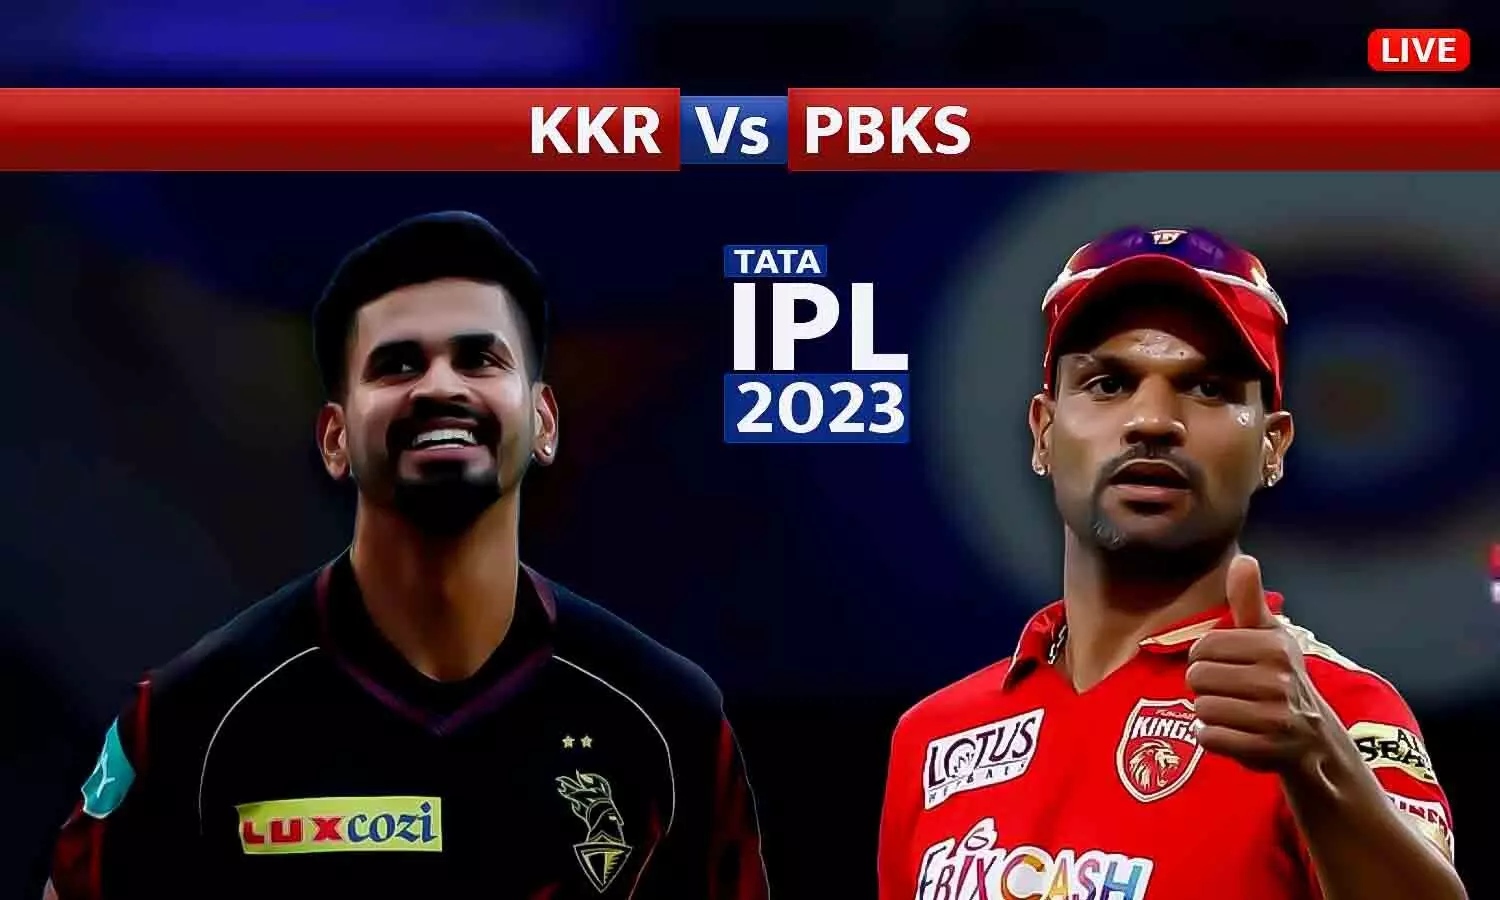 PBKS vs KKR IPL 2023: पंजाब की जीत से शुरुआत, DLS मैथड से कोलकाता को 7 रन से हराया, अर्शदीप सिंह ने चटकाए 3 विकेट